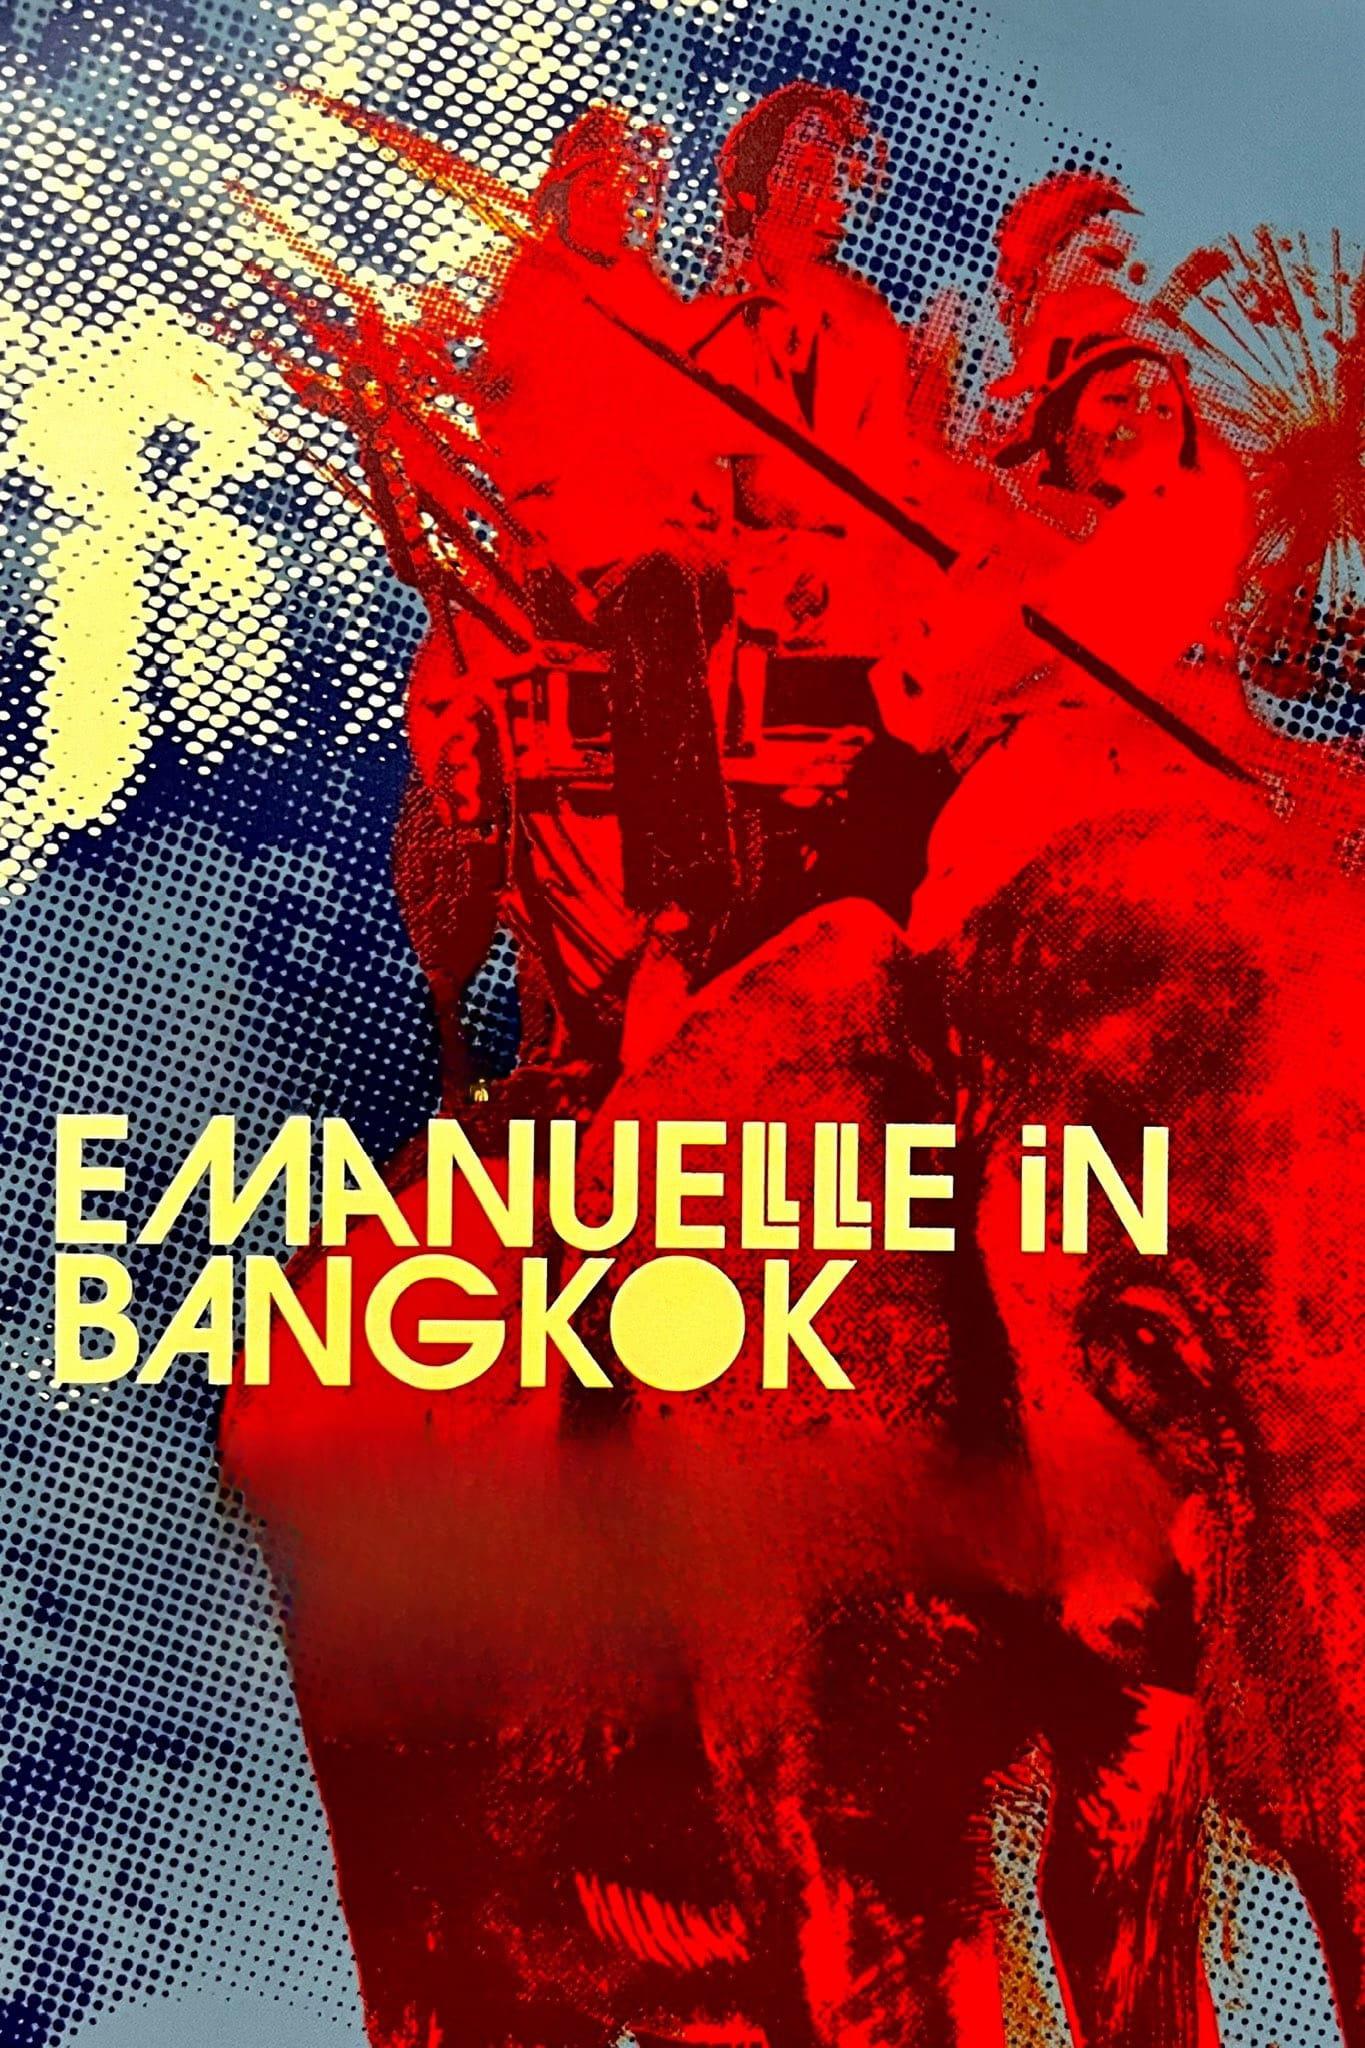 Emanuelle in Bangkok poster